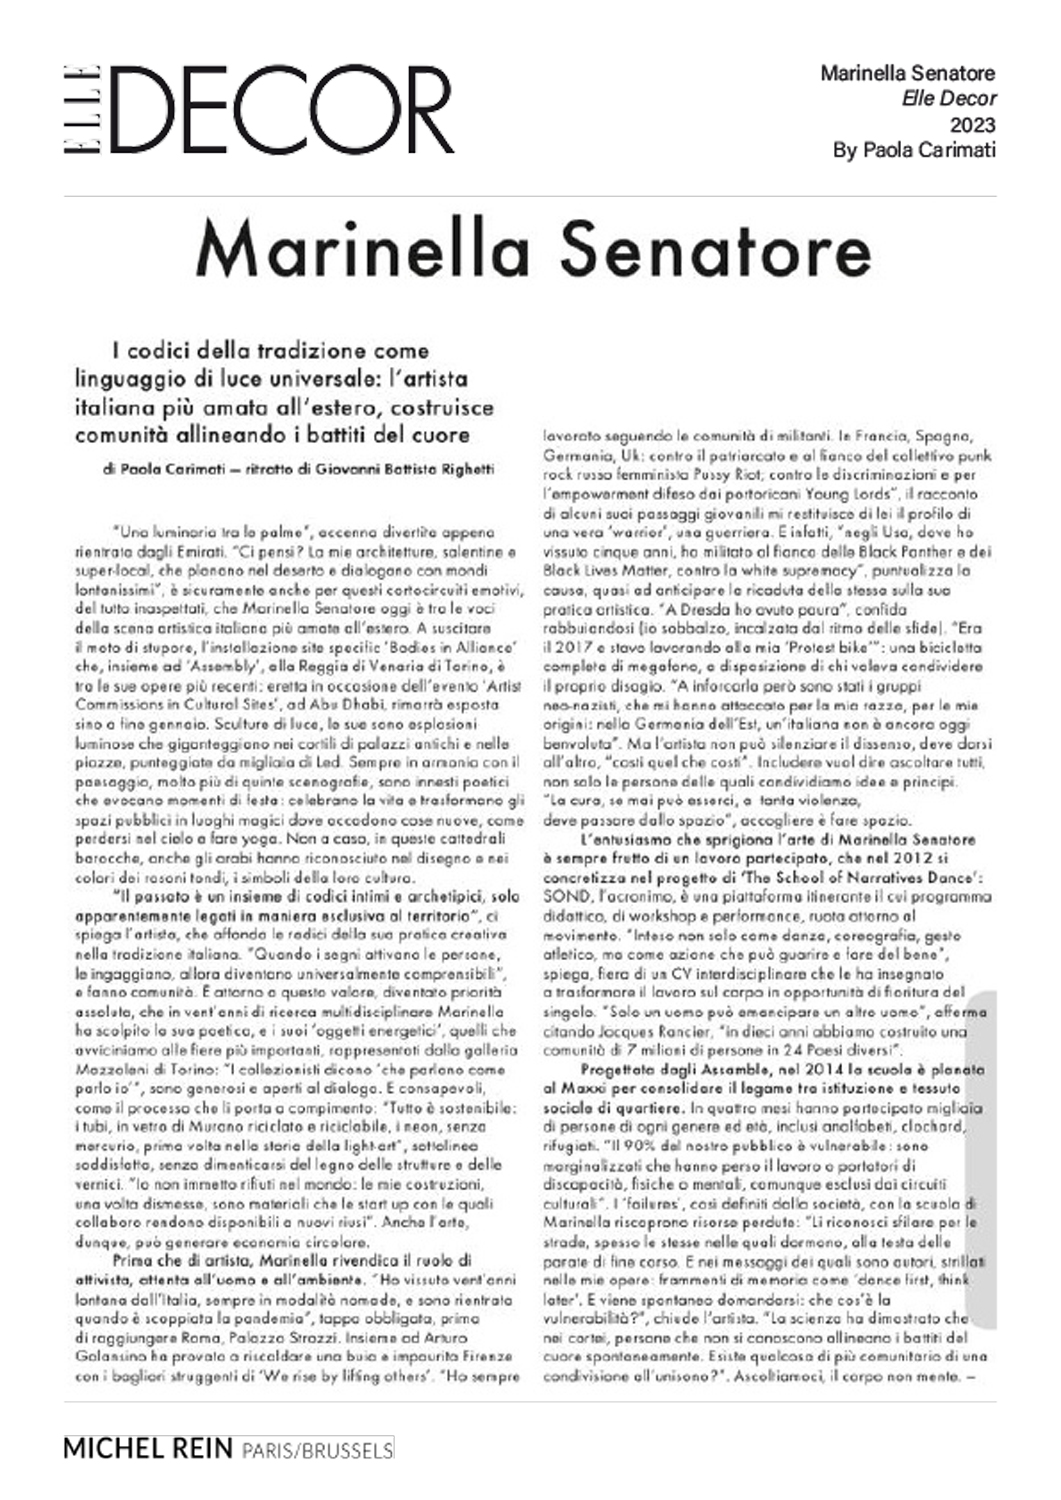 Marinella Senatore - Elle Decor